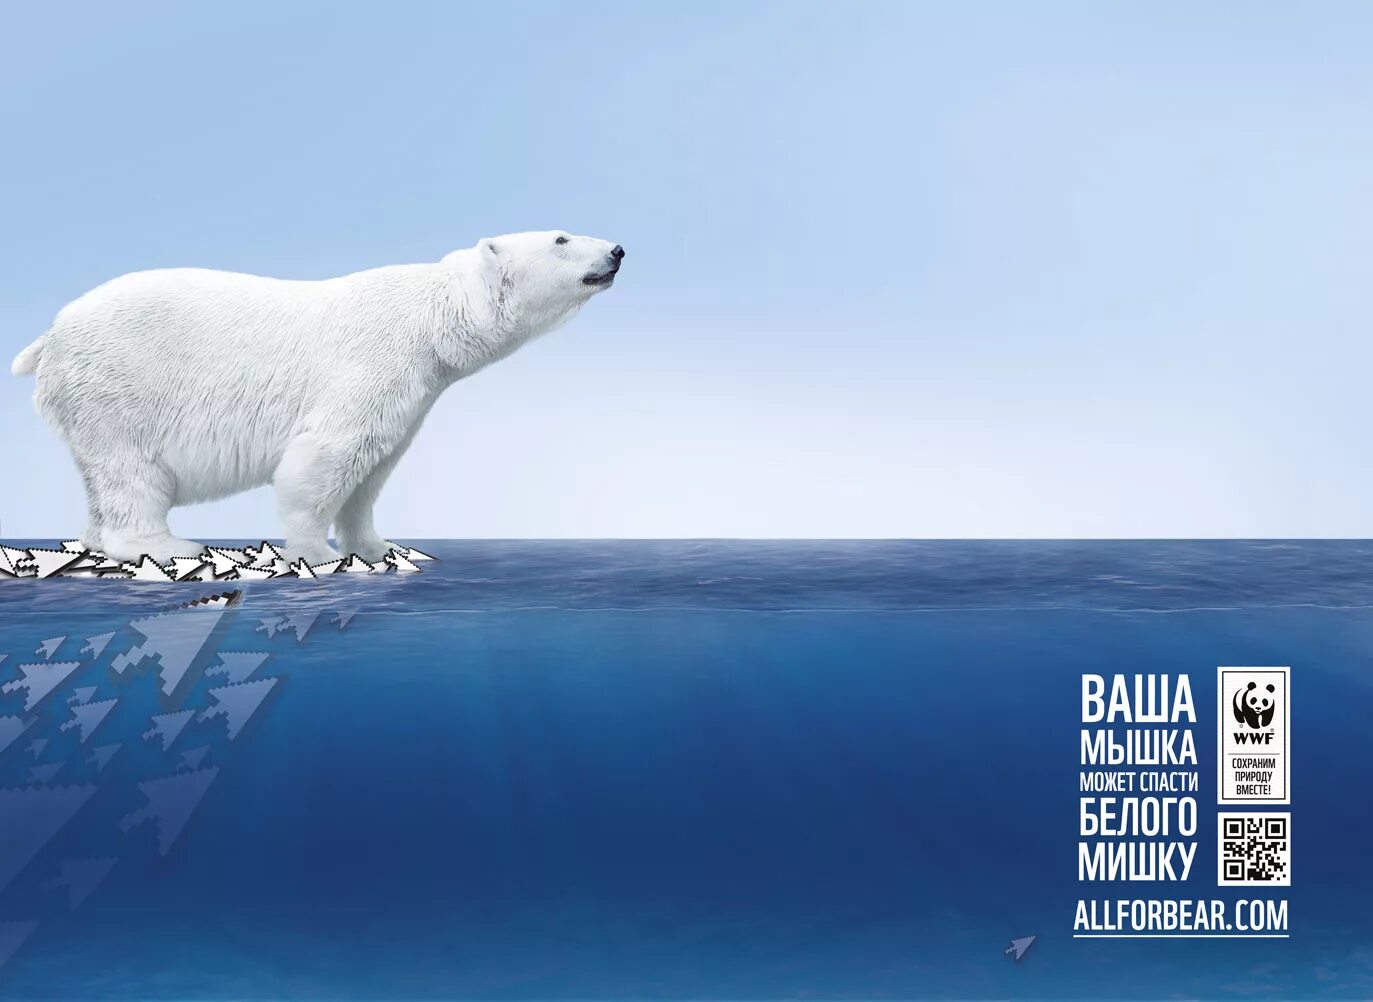 Всемирный фонд дикой природы WWF России. Всемирный фонд дикой природы WWF реклама. Социальная реклама Всемирного фонда дикой природы. Креативная реклама с медведем. Слоган животное